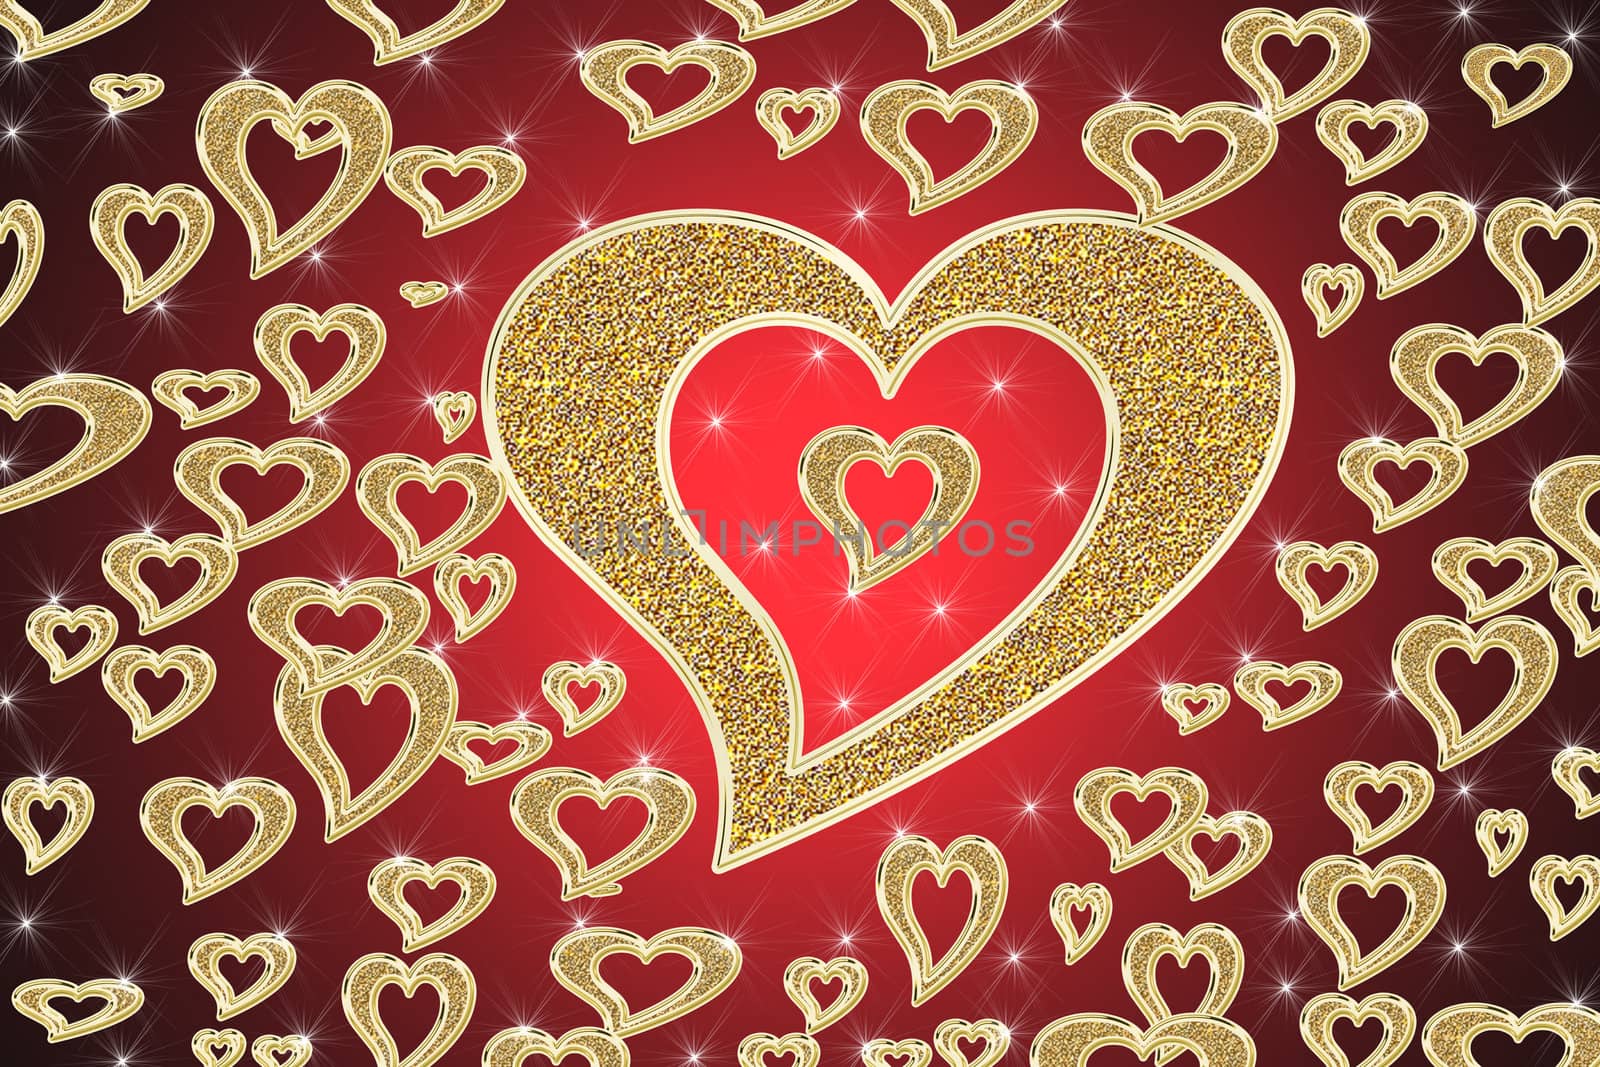 golden hearts on red background by Dessie_bg